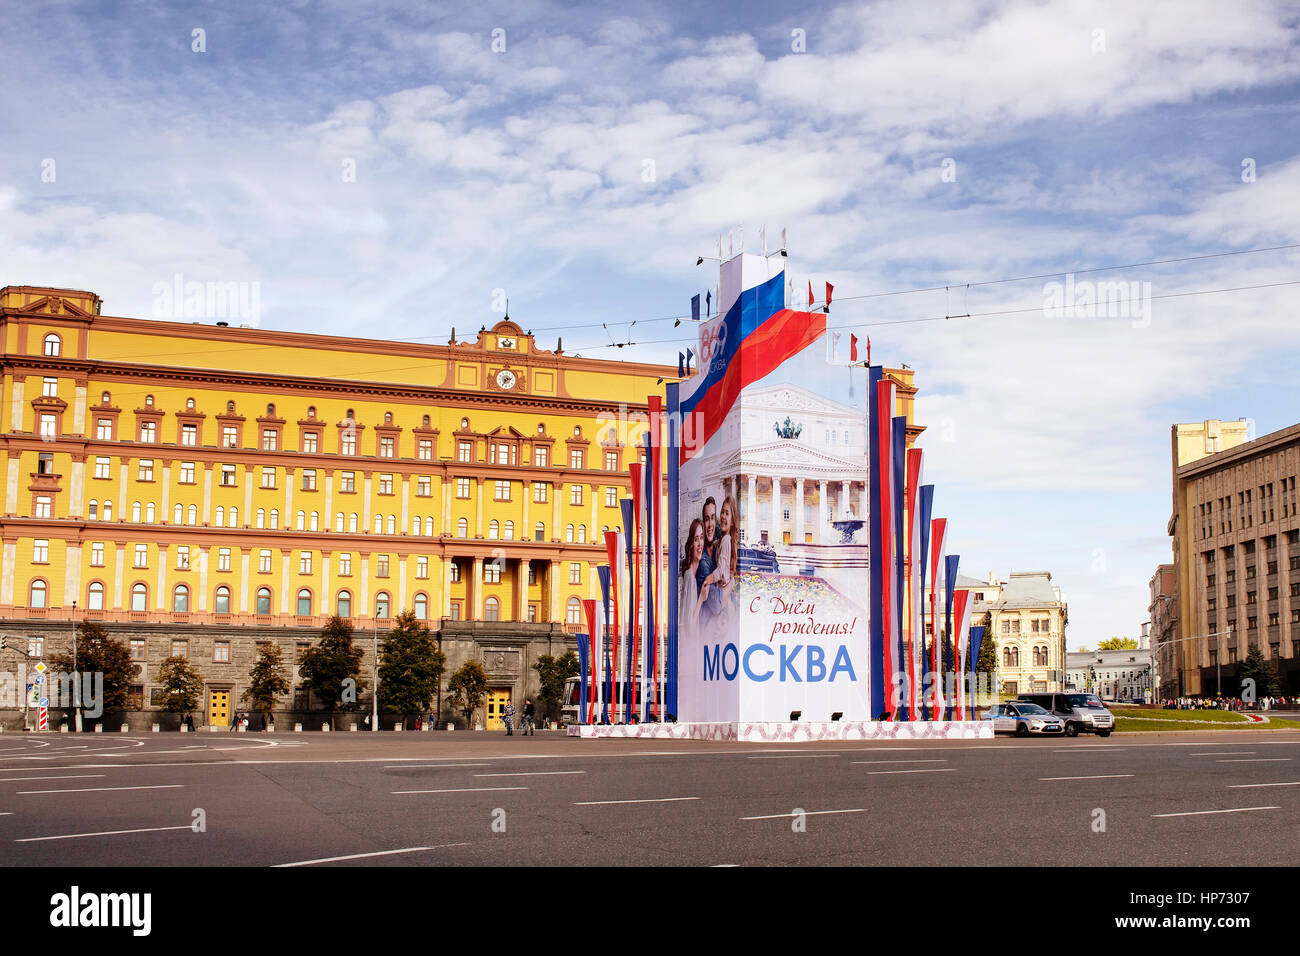 Vue sur la place Loubianka. Siège du KGB en Russie est dans l'arrière-plan. Advertisiment de Moscou jour est placé au milieu de la région. Banque D'Images